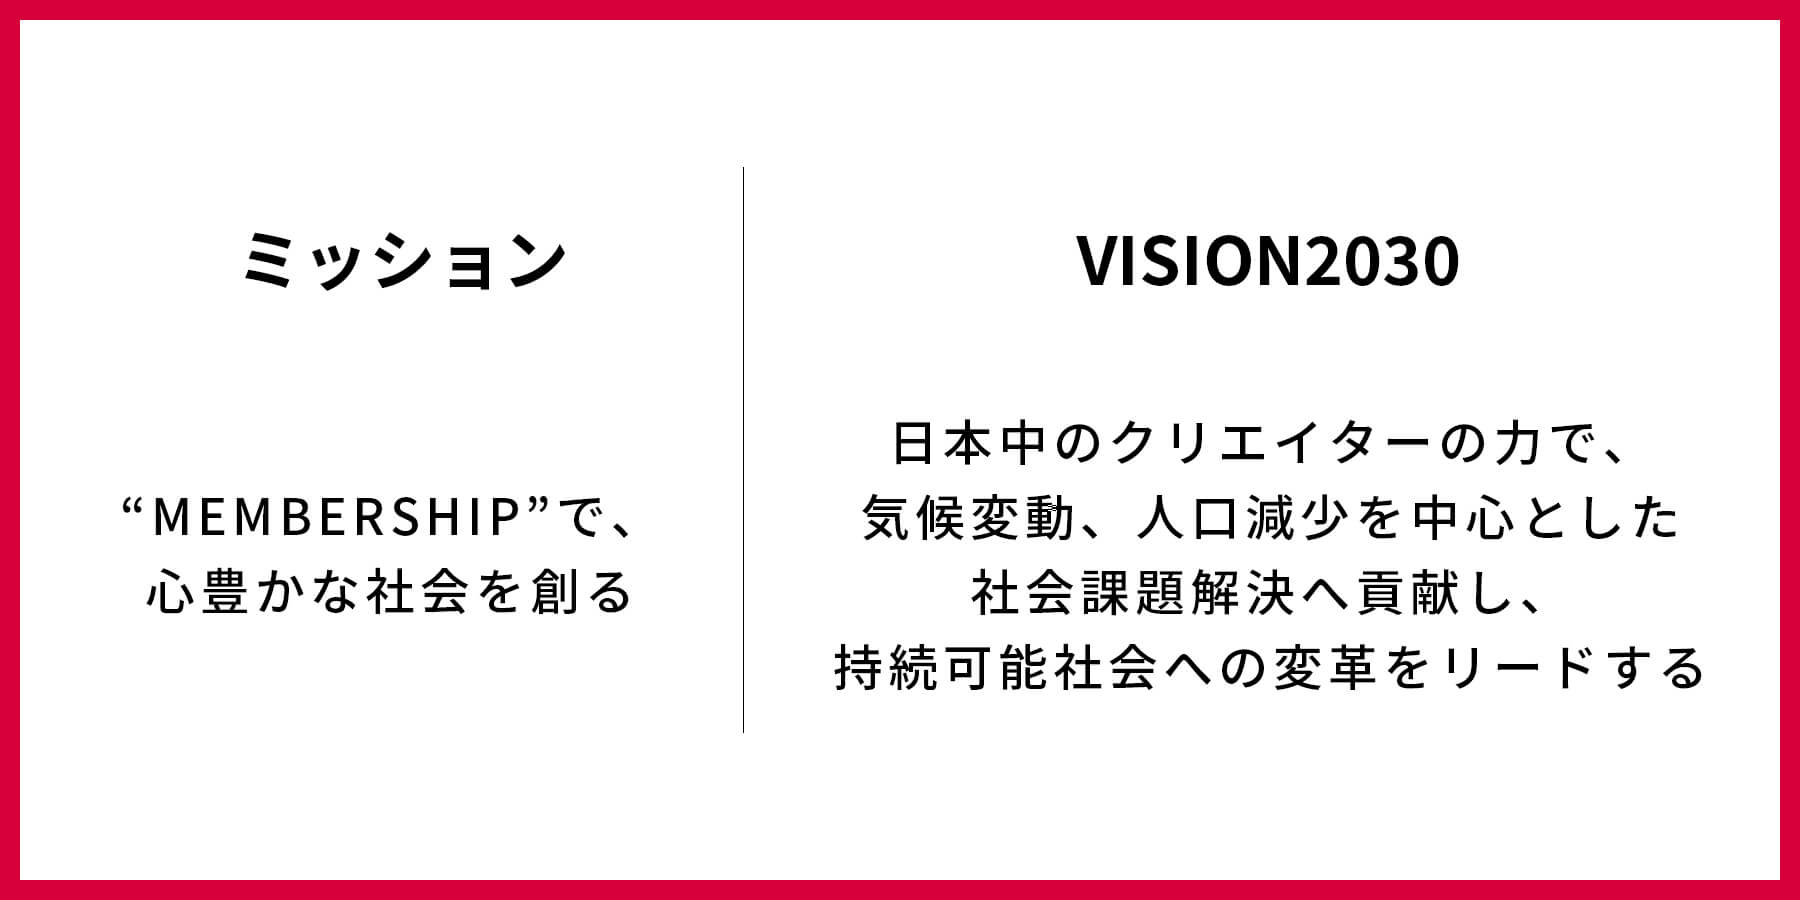 2020年に新たに策定したミッションと『VISION2030』